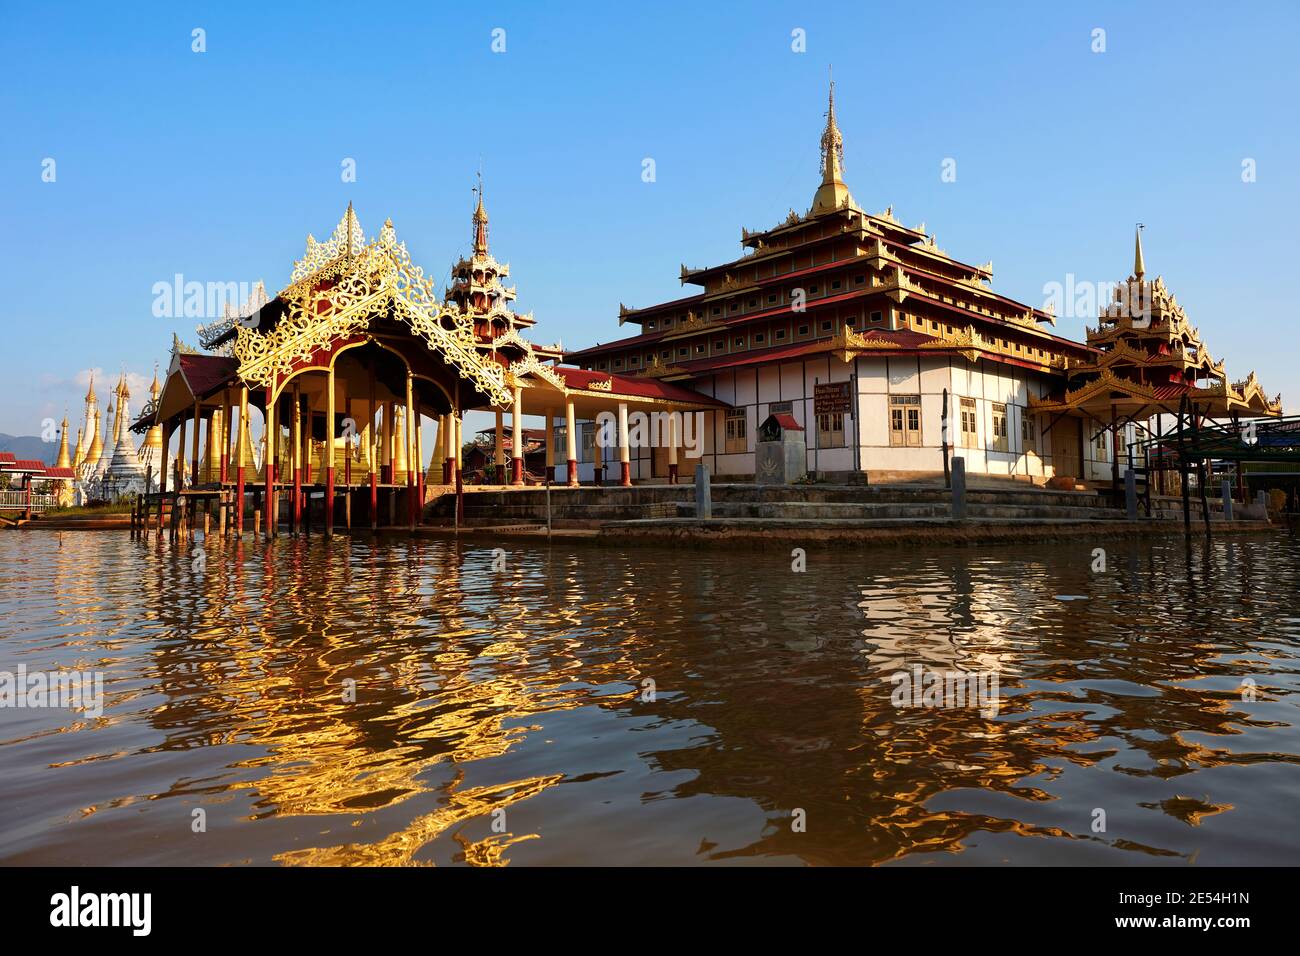 Buddhist Pagoda on Inle Lake, Myanmar. Stock Photo